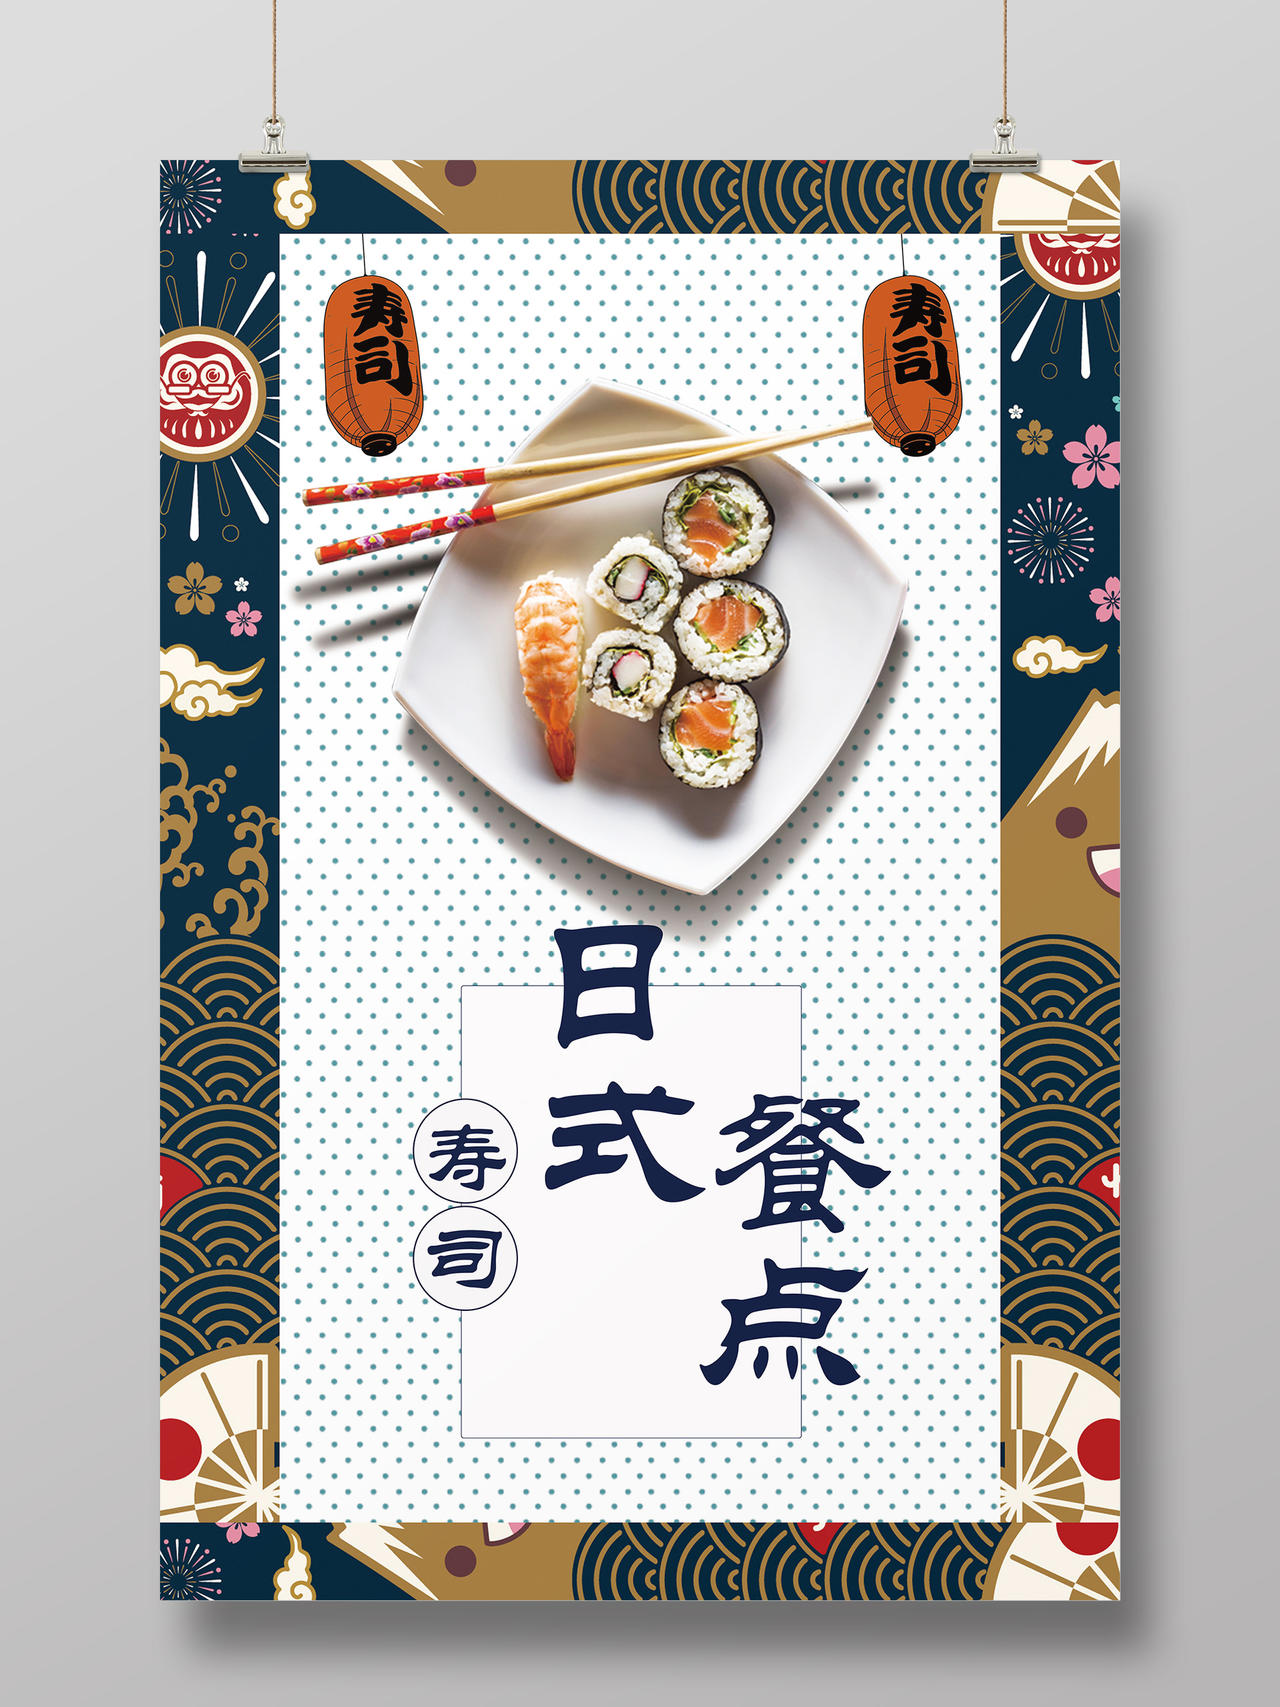 和风手绘风格日本料理日式餐点寿司美食海报